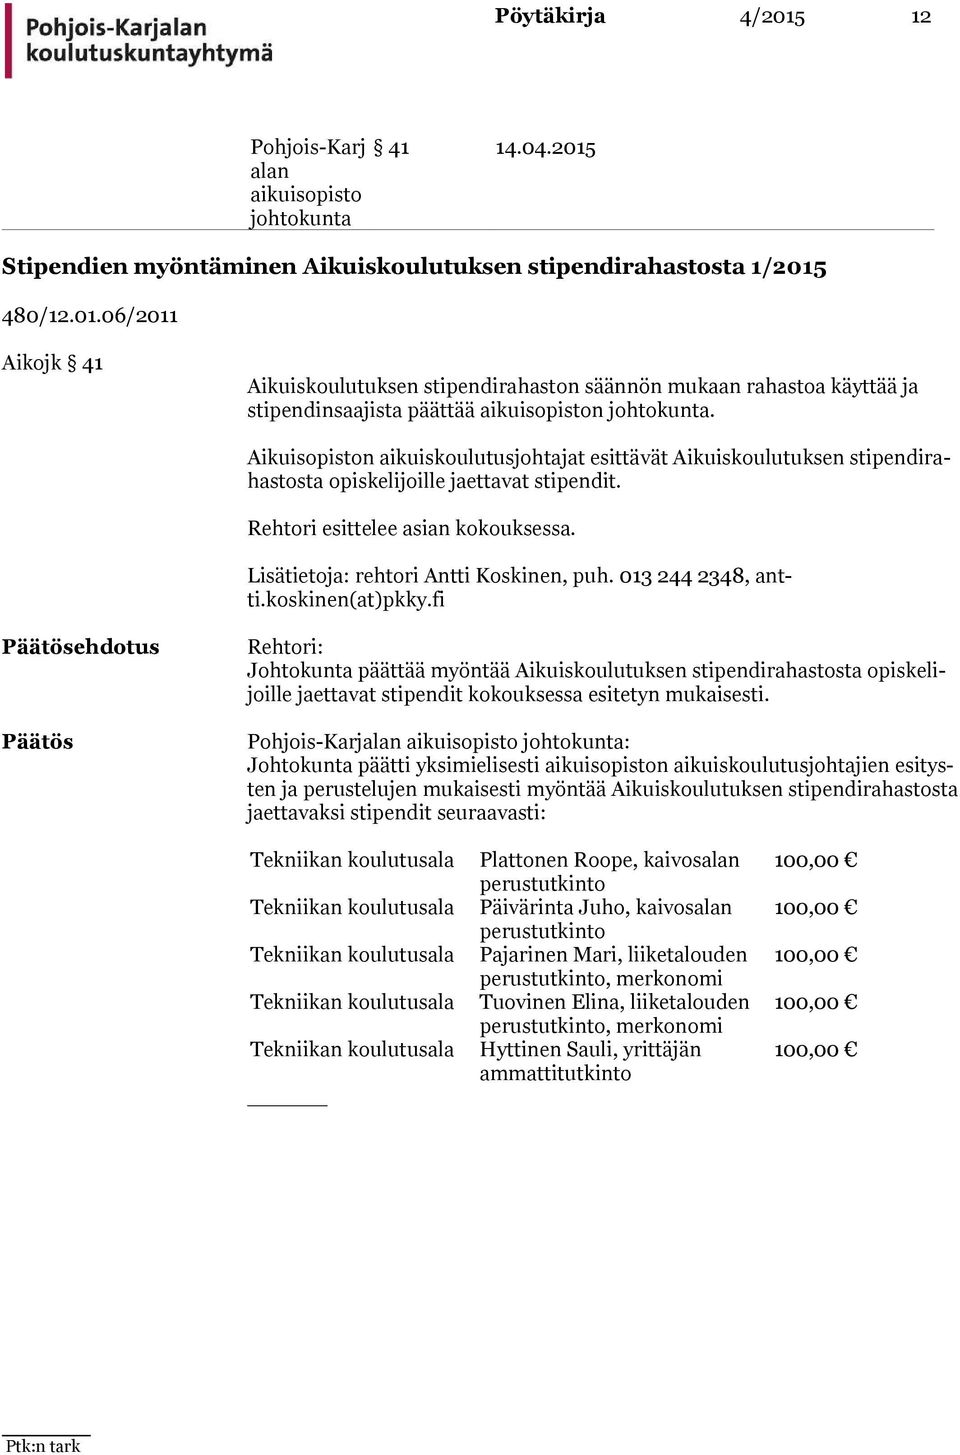 Lisätietoja: rehtori Antti Koskinen, puh. 013 244 2348, antti.koskinen(at)pkky.